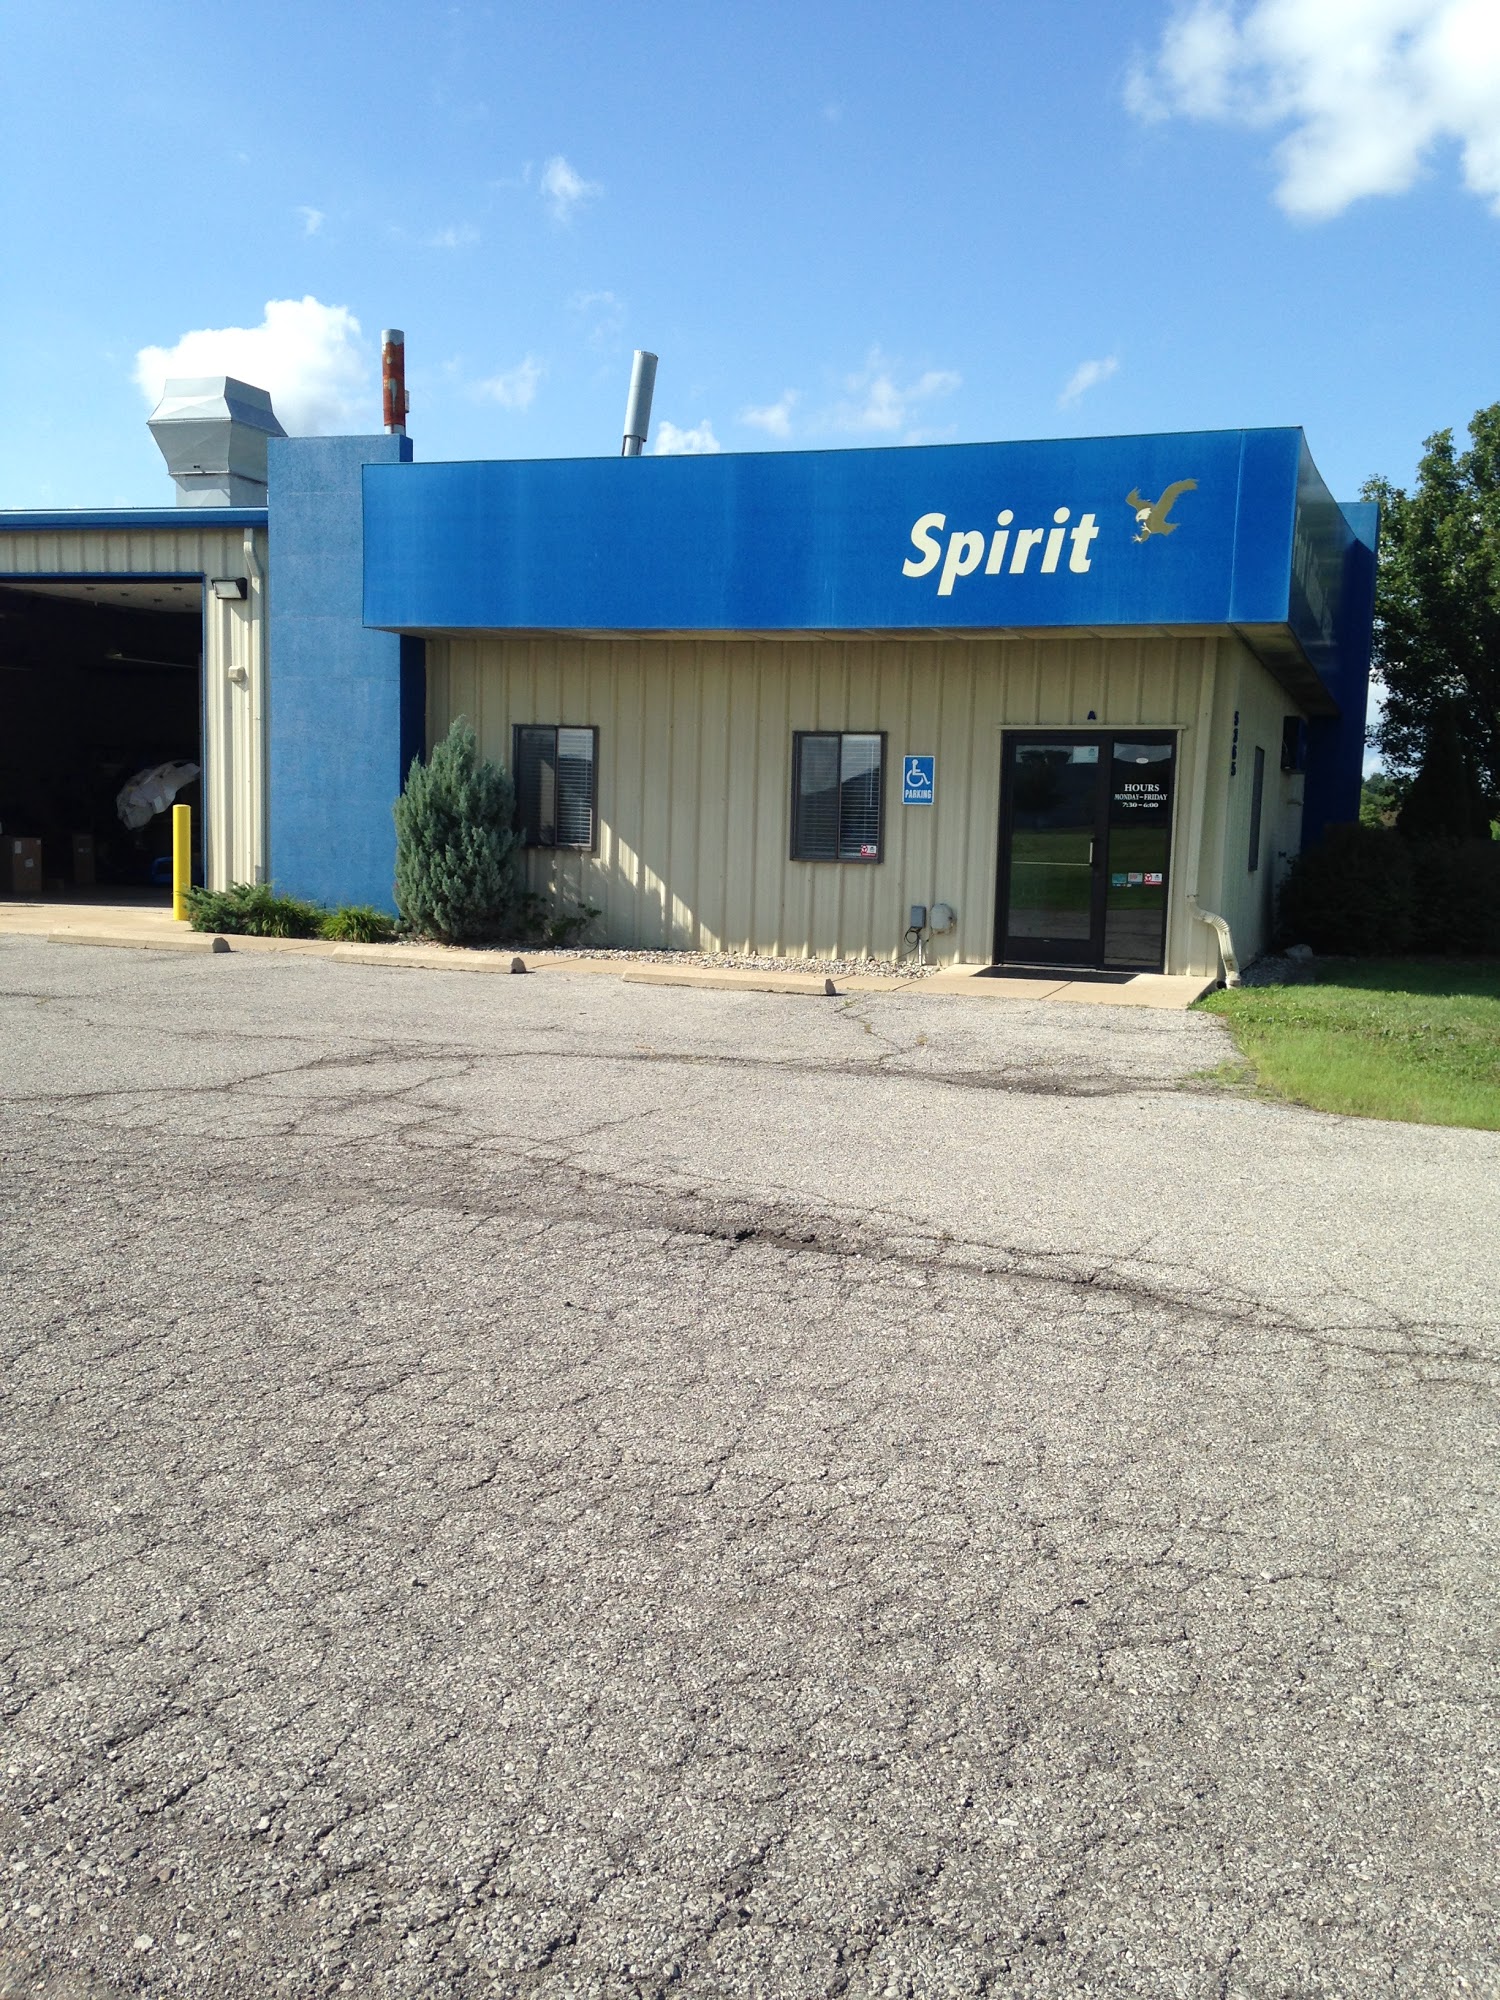 Spirit Ford Collision Center